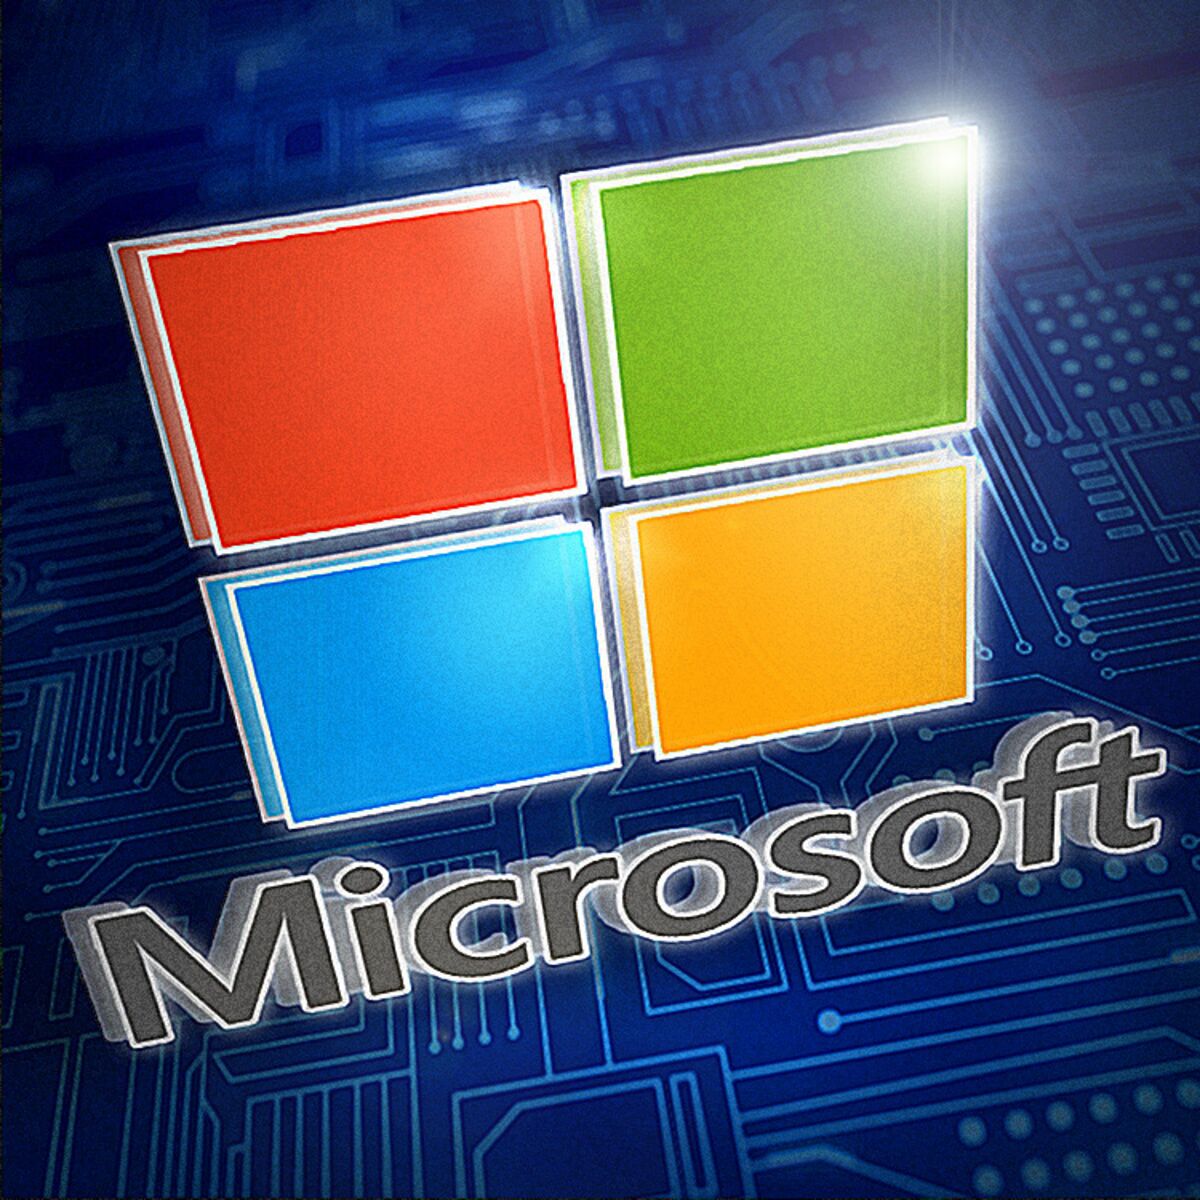 Ganancias, ventas Microsoft superan estimados; alta demanda nube